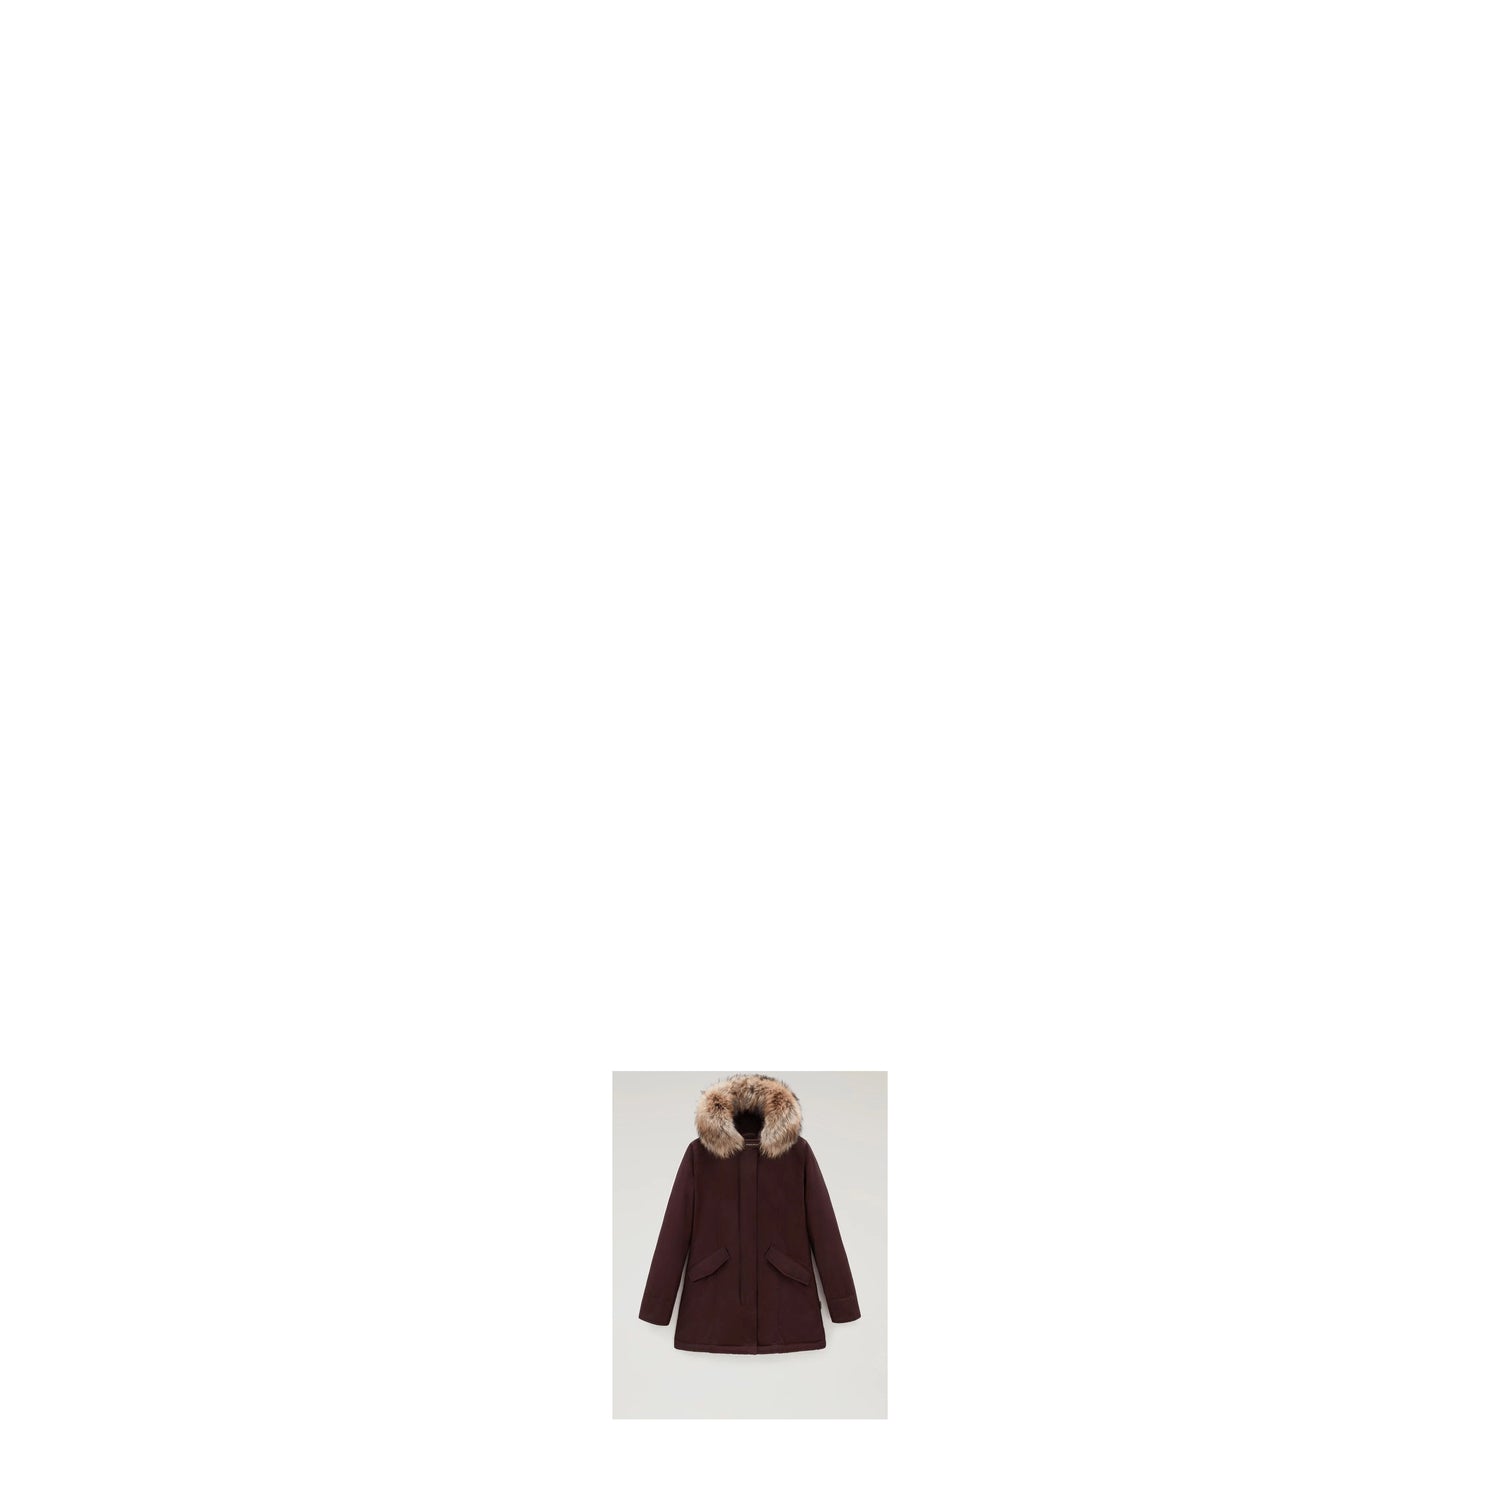 Woolrich Idee Regalo Jacket artic parka Donna Cotone Marrone Testa di Moro